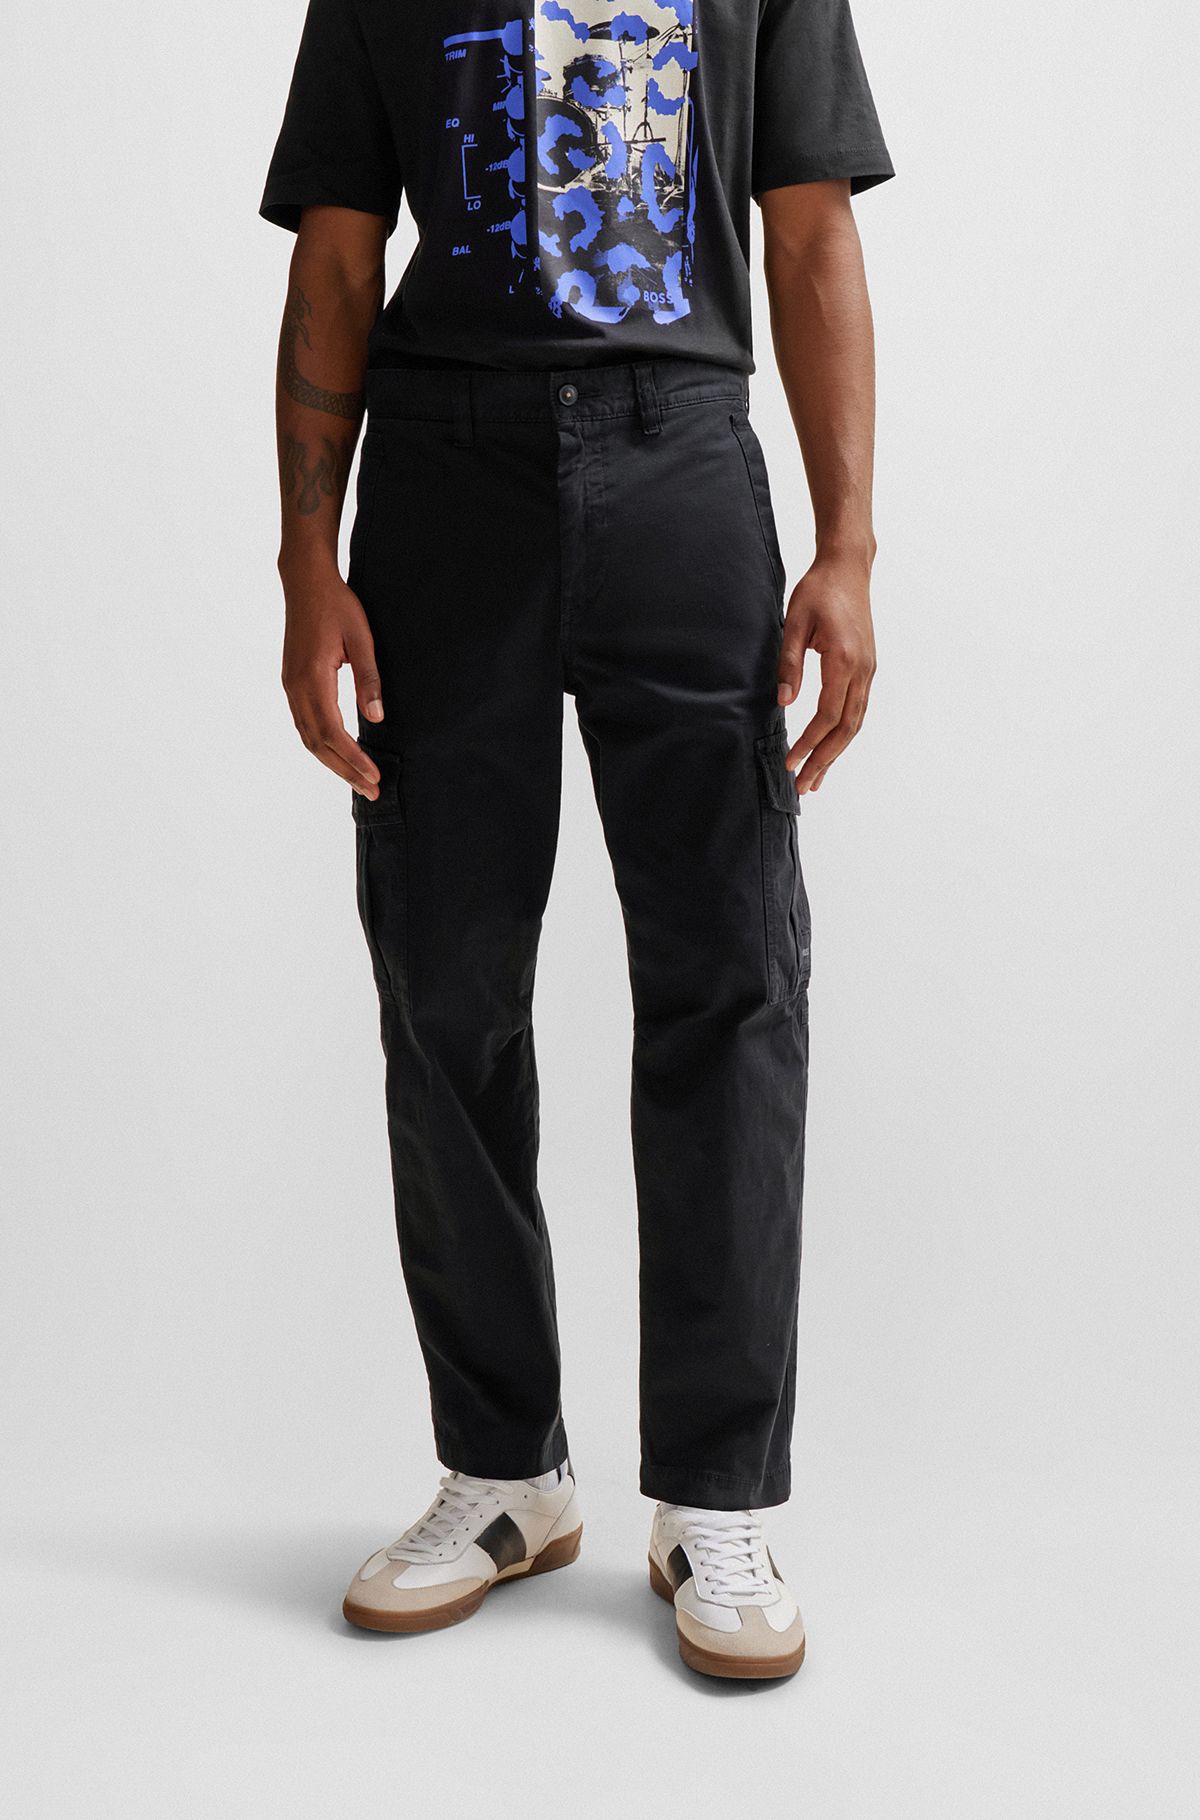 Pantaloni cargo in cotone elasticizzato con toppa con logo, Nero